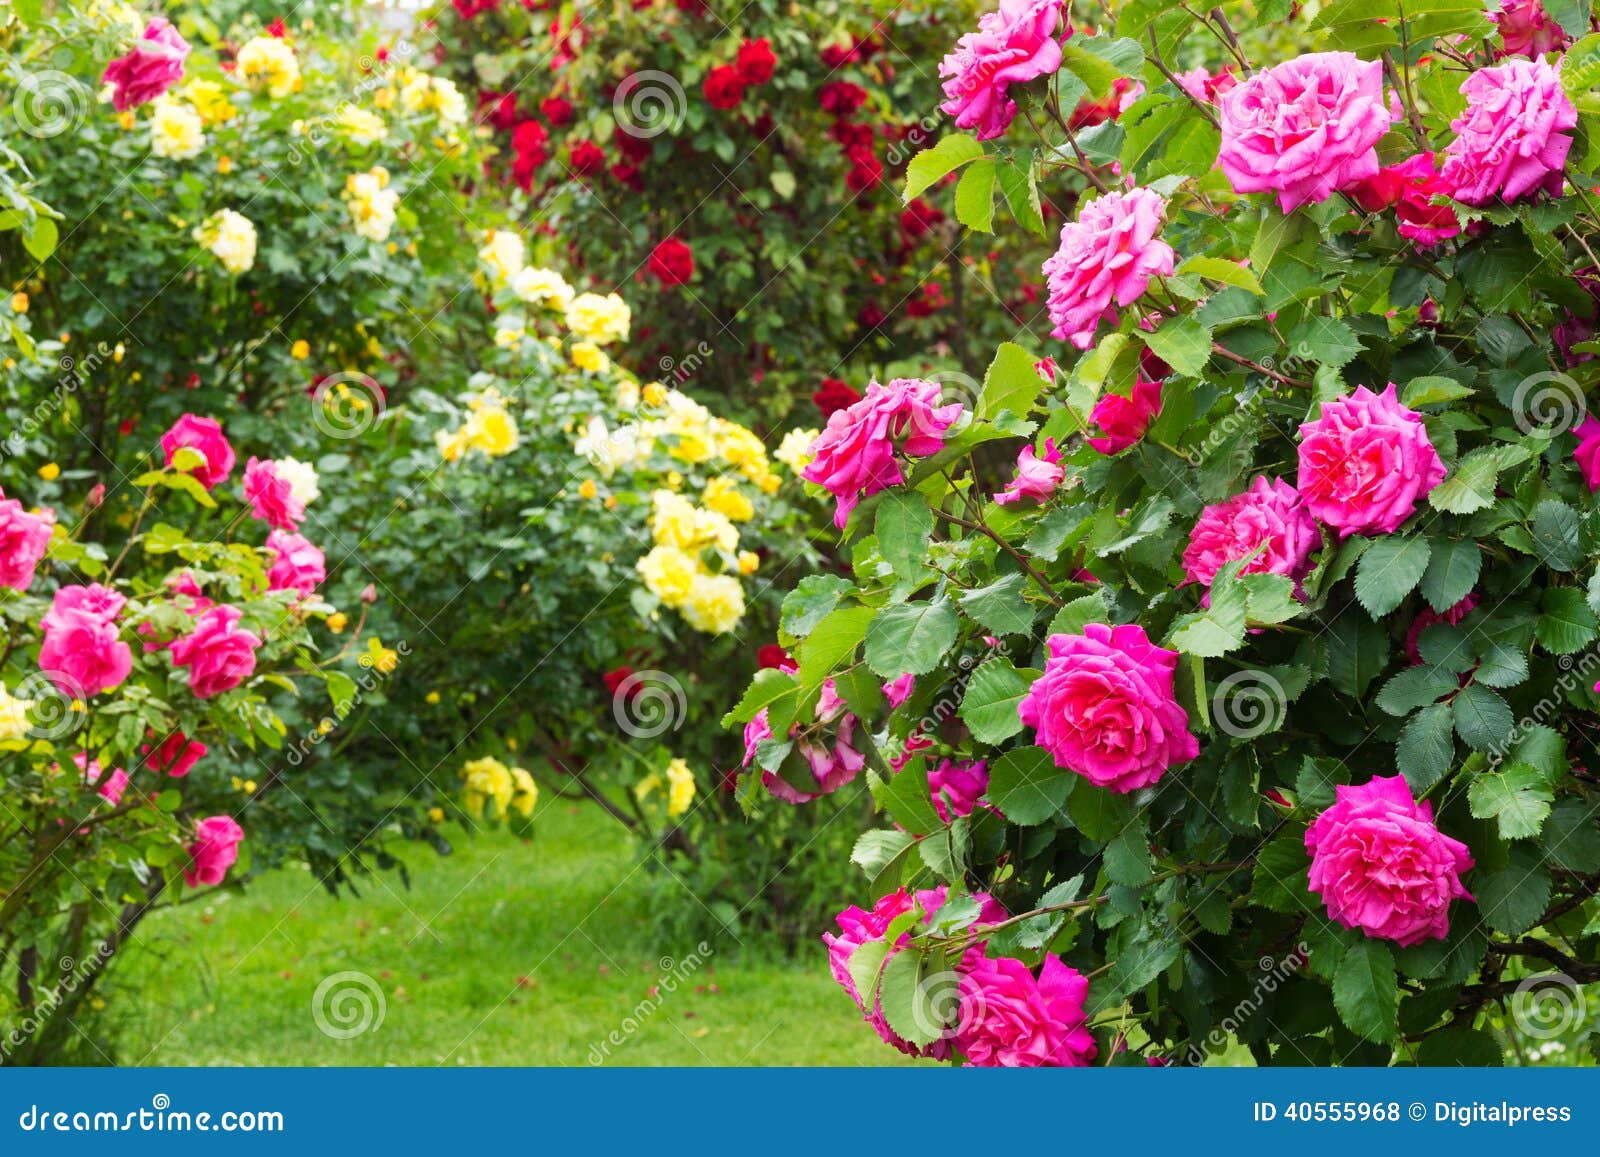 rosebush